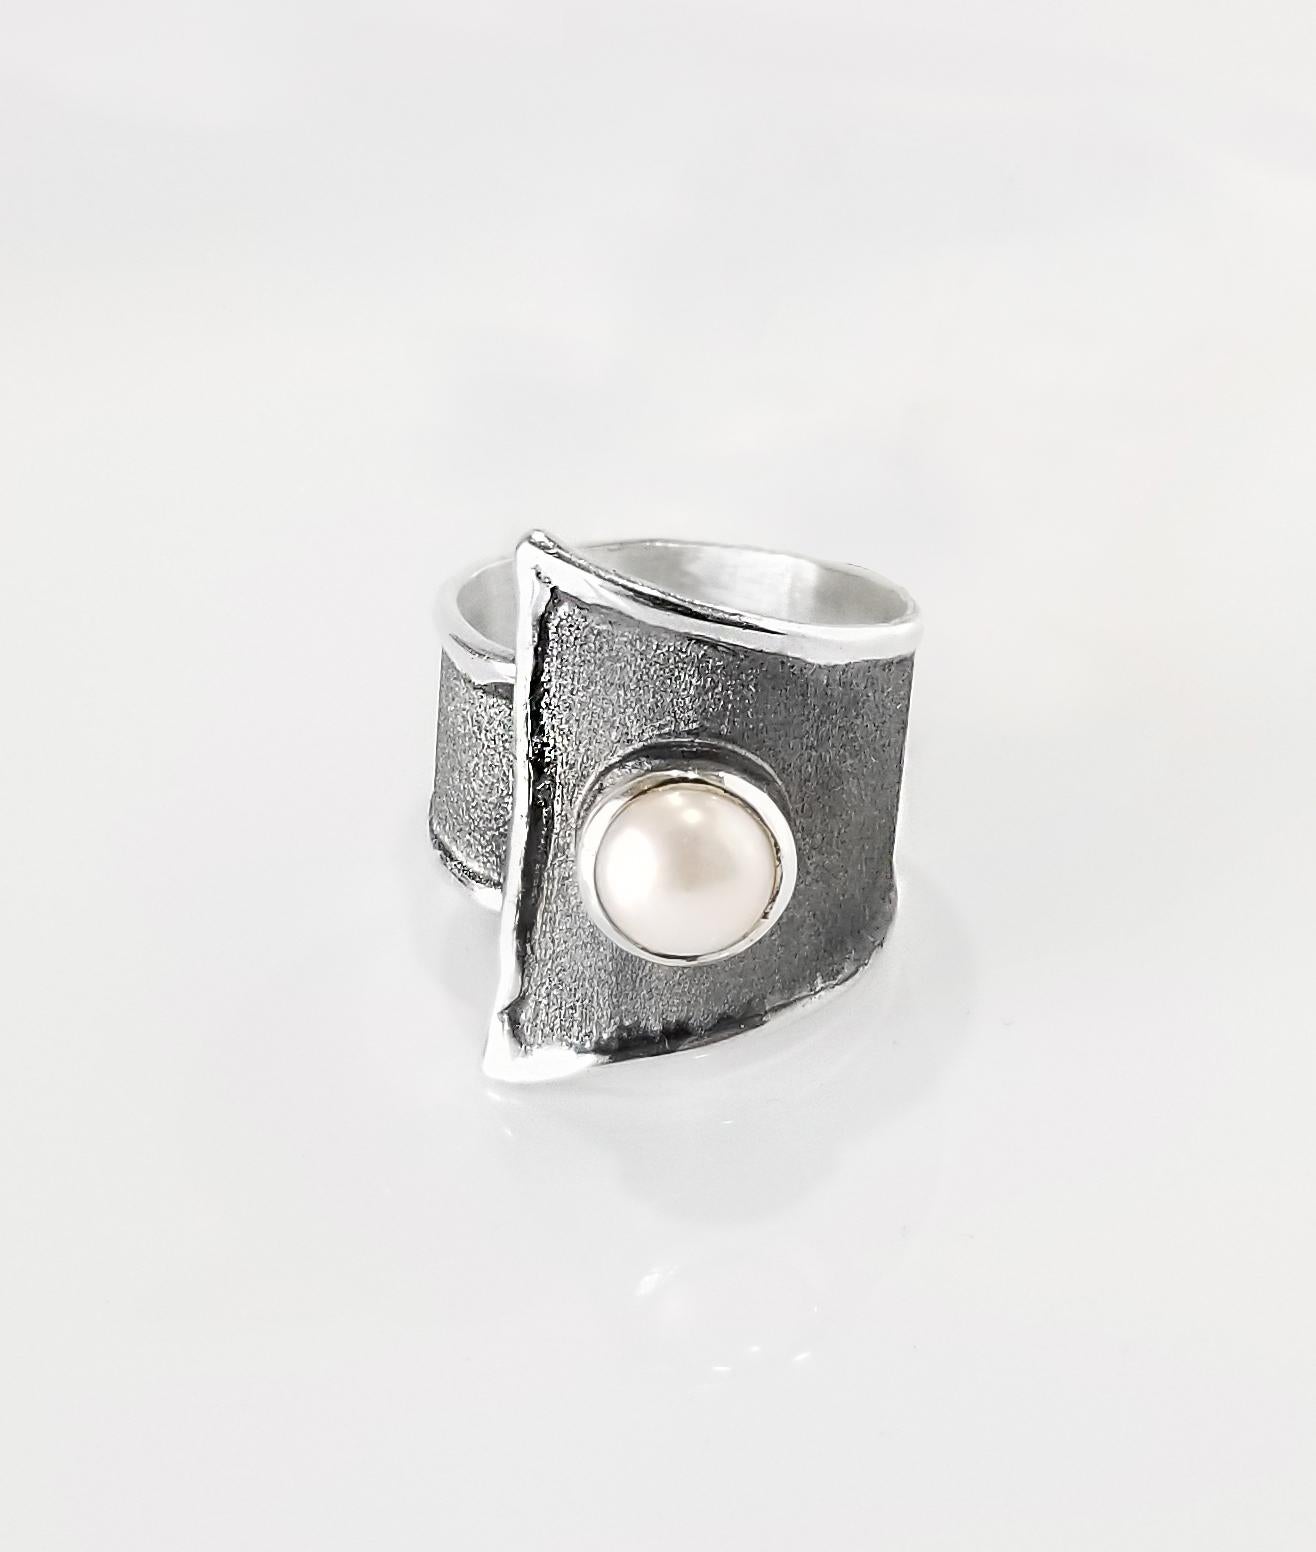 Yianni Creations Hephestos Collection 100% handgefertigter handwerklicher Ring aus Feinsilber. Der Ring zeigt eine 7 - 7,5 mm große Süßwasserperle, die auf einem einzigartigen oxidierten Rhodiumhintergrund kontrastiert und durch einzigartige